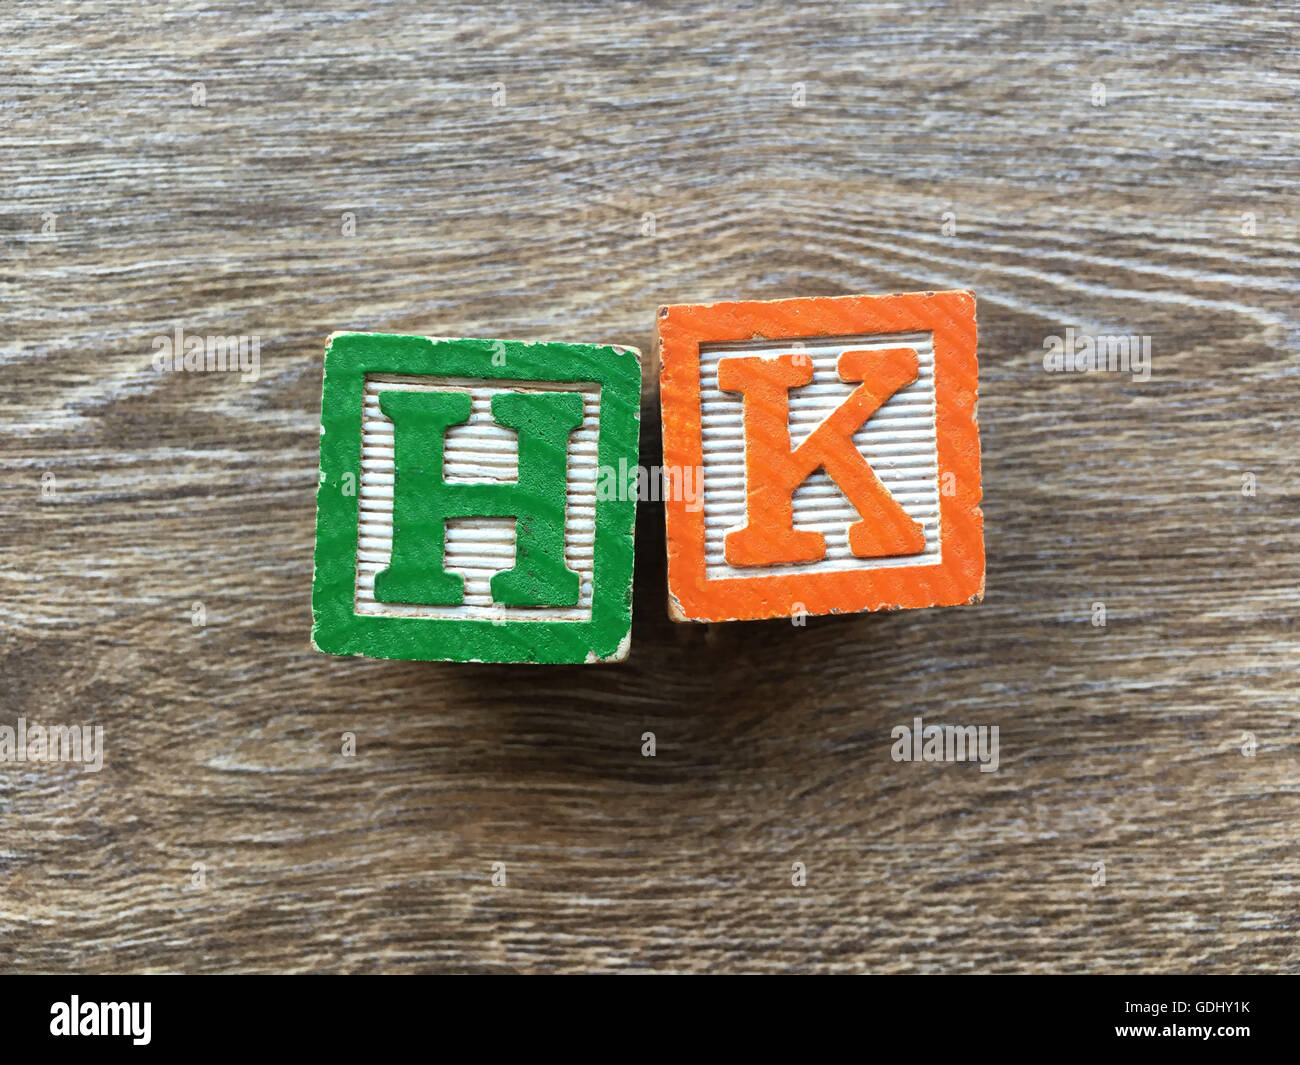 HK abbreviation for Hong Kong Stock Photo